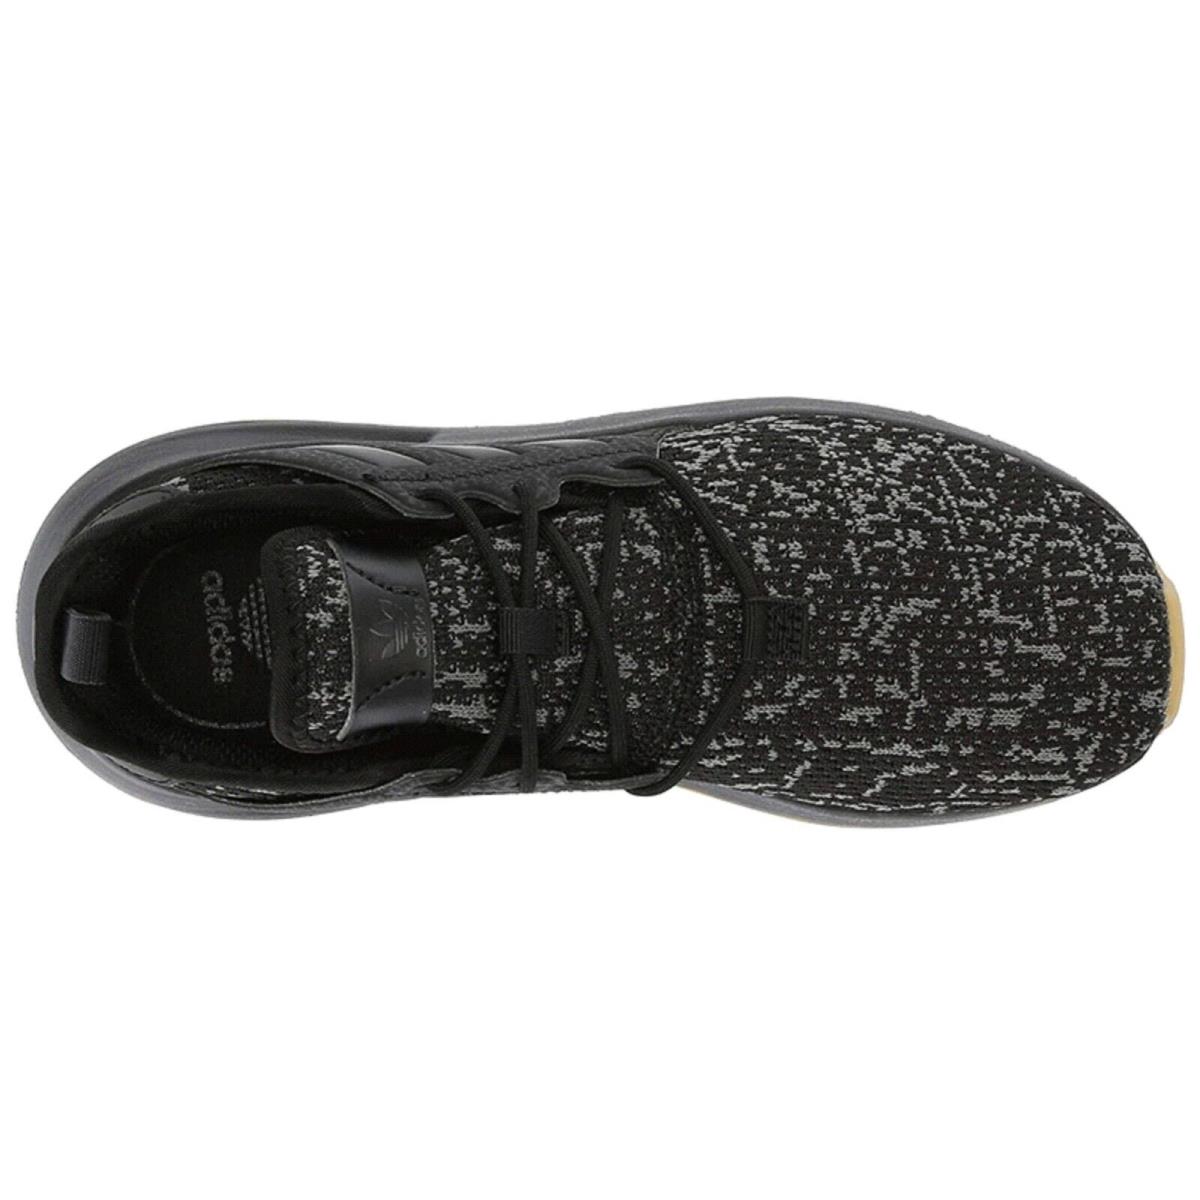 Adidas X_plr C Little Kids Unisex Sneaker Core Black/Core Black/Carbon